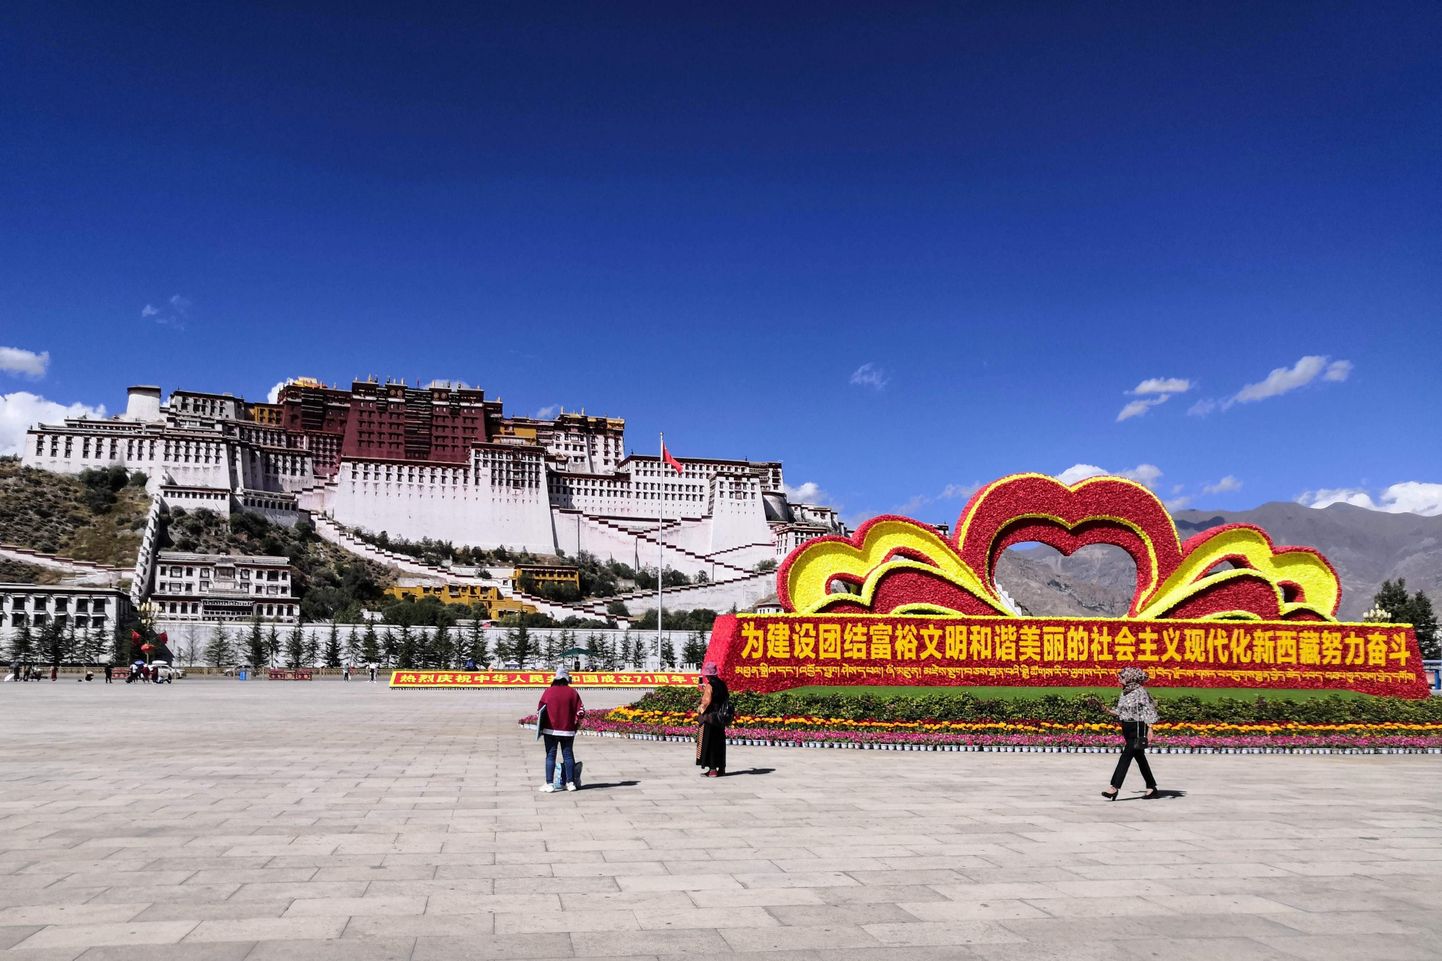 Hiina rahvuspäeva dekoratsioonid Lhasas Potala palee ees 29. september 2020.